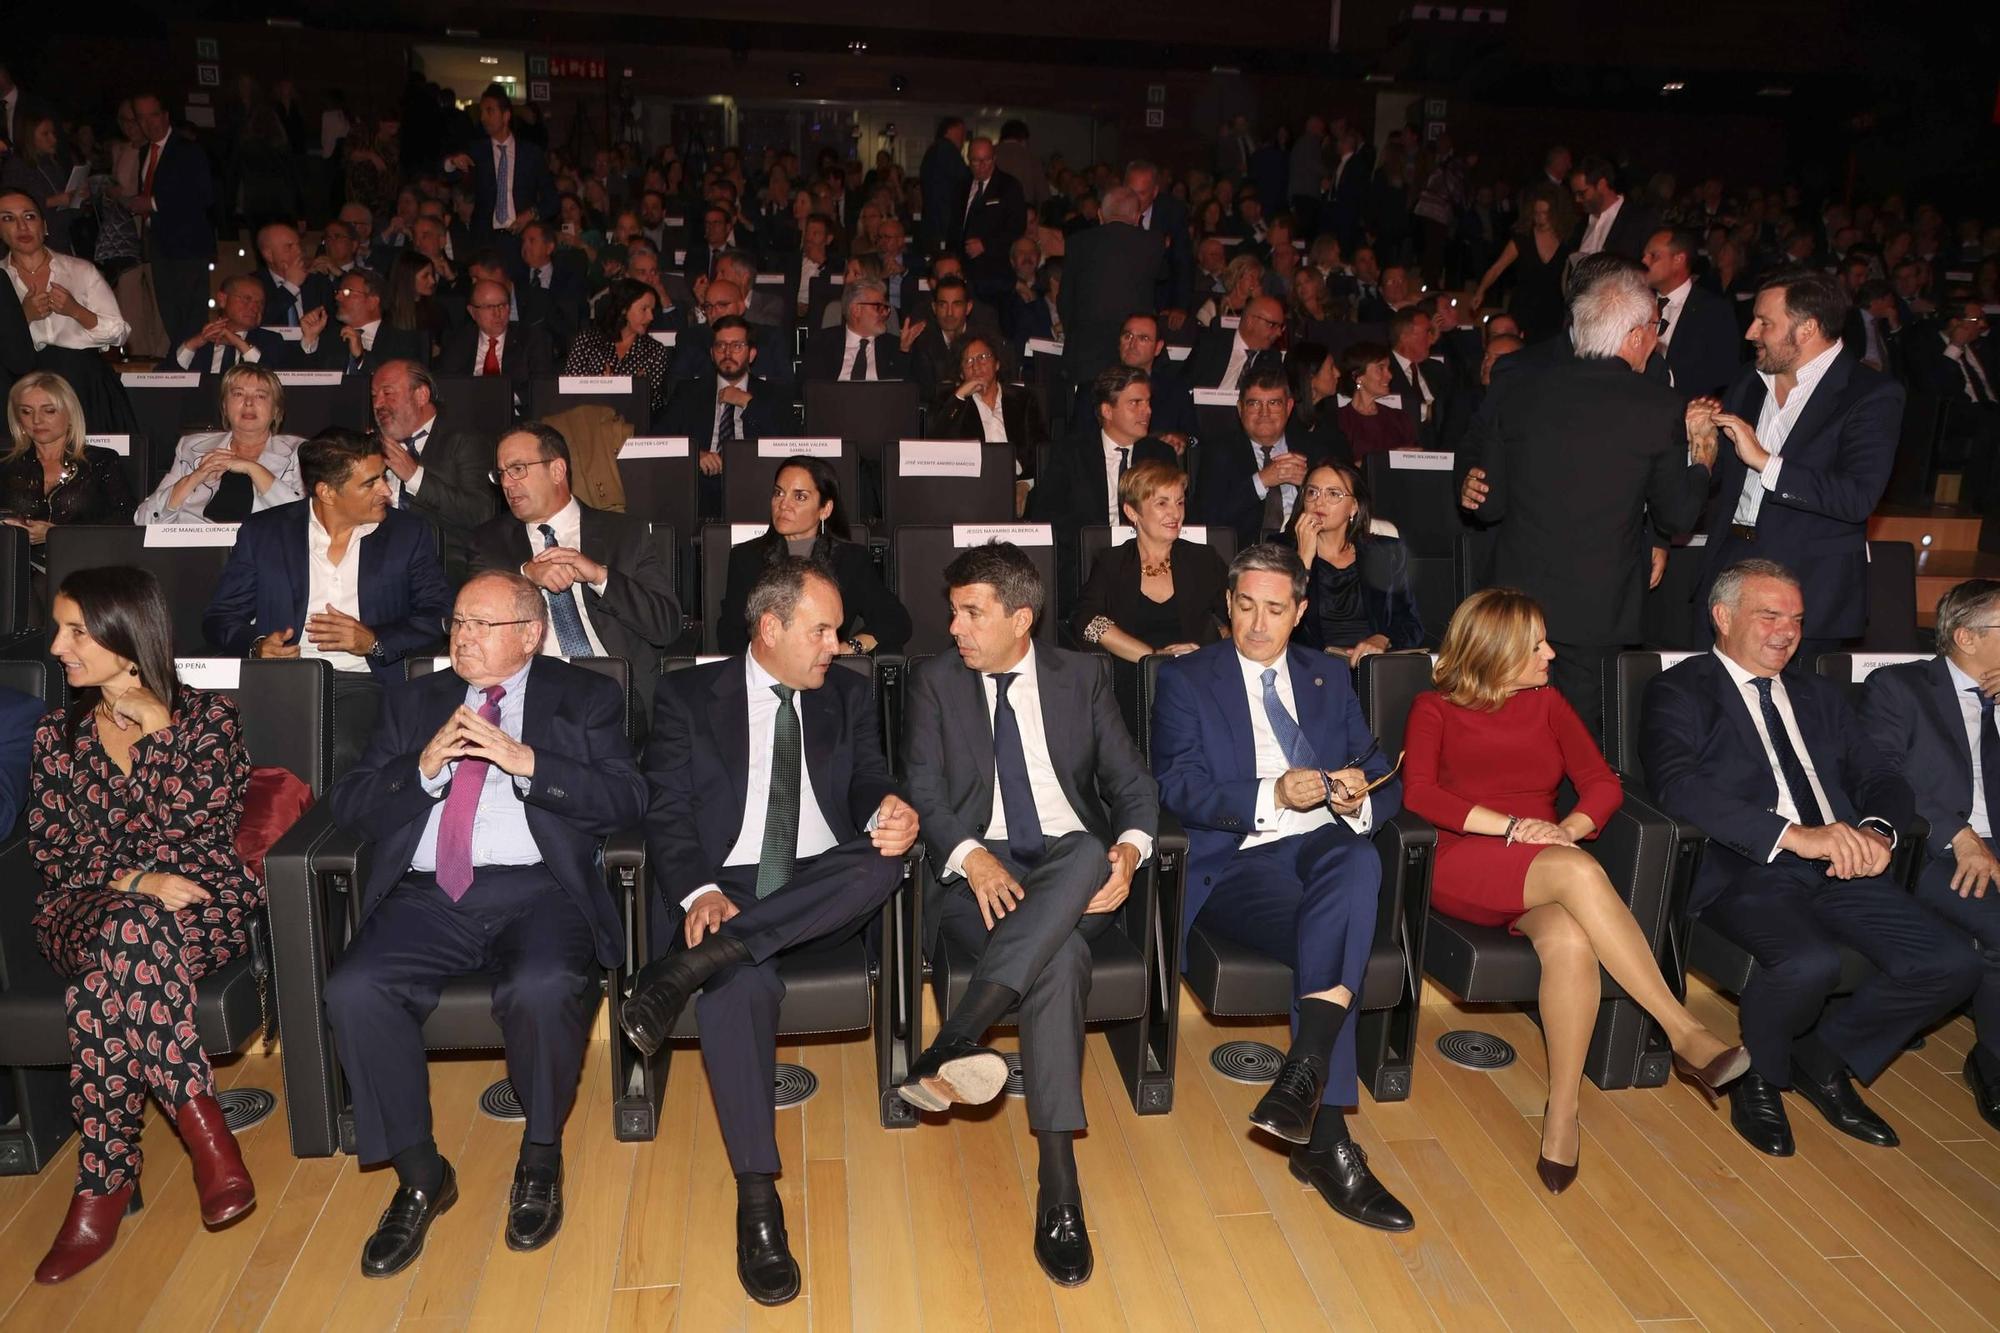 Así ha sido la 48 edición de la Noche de la Economía organizada por la Cámara de Comercio de Alicante